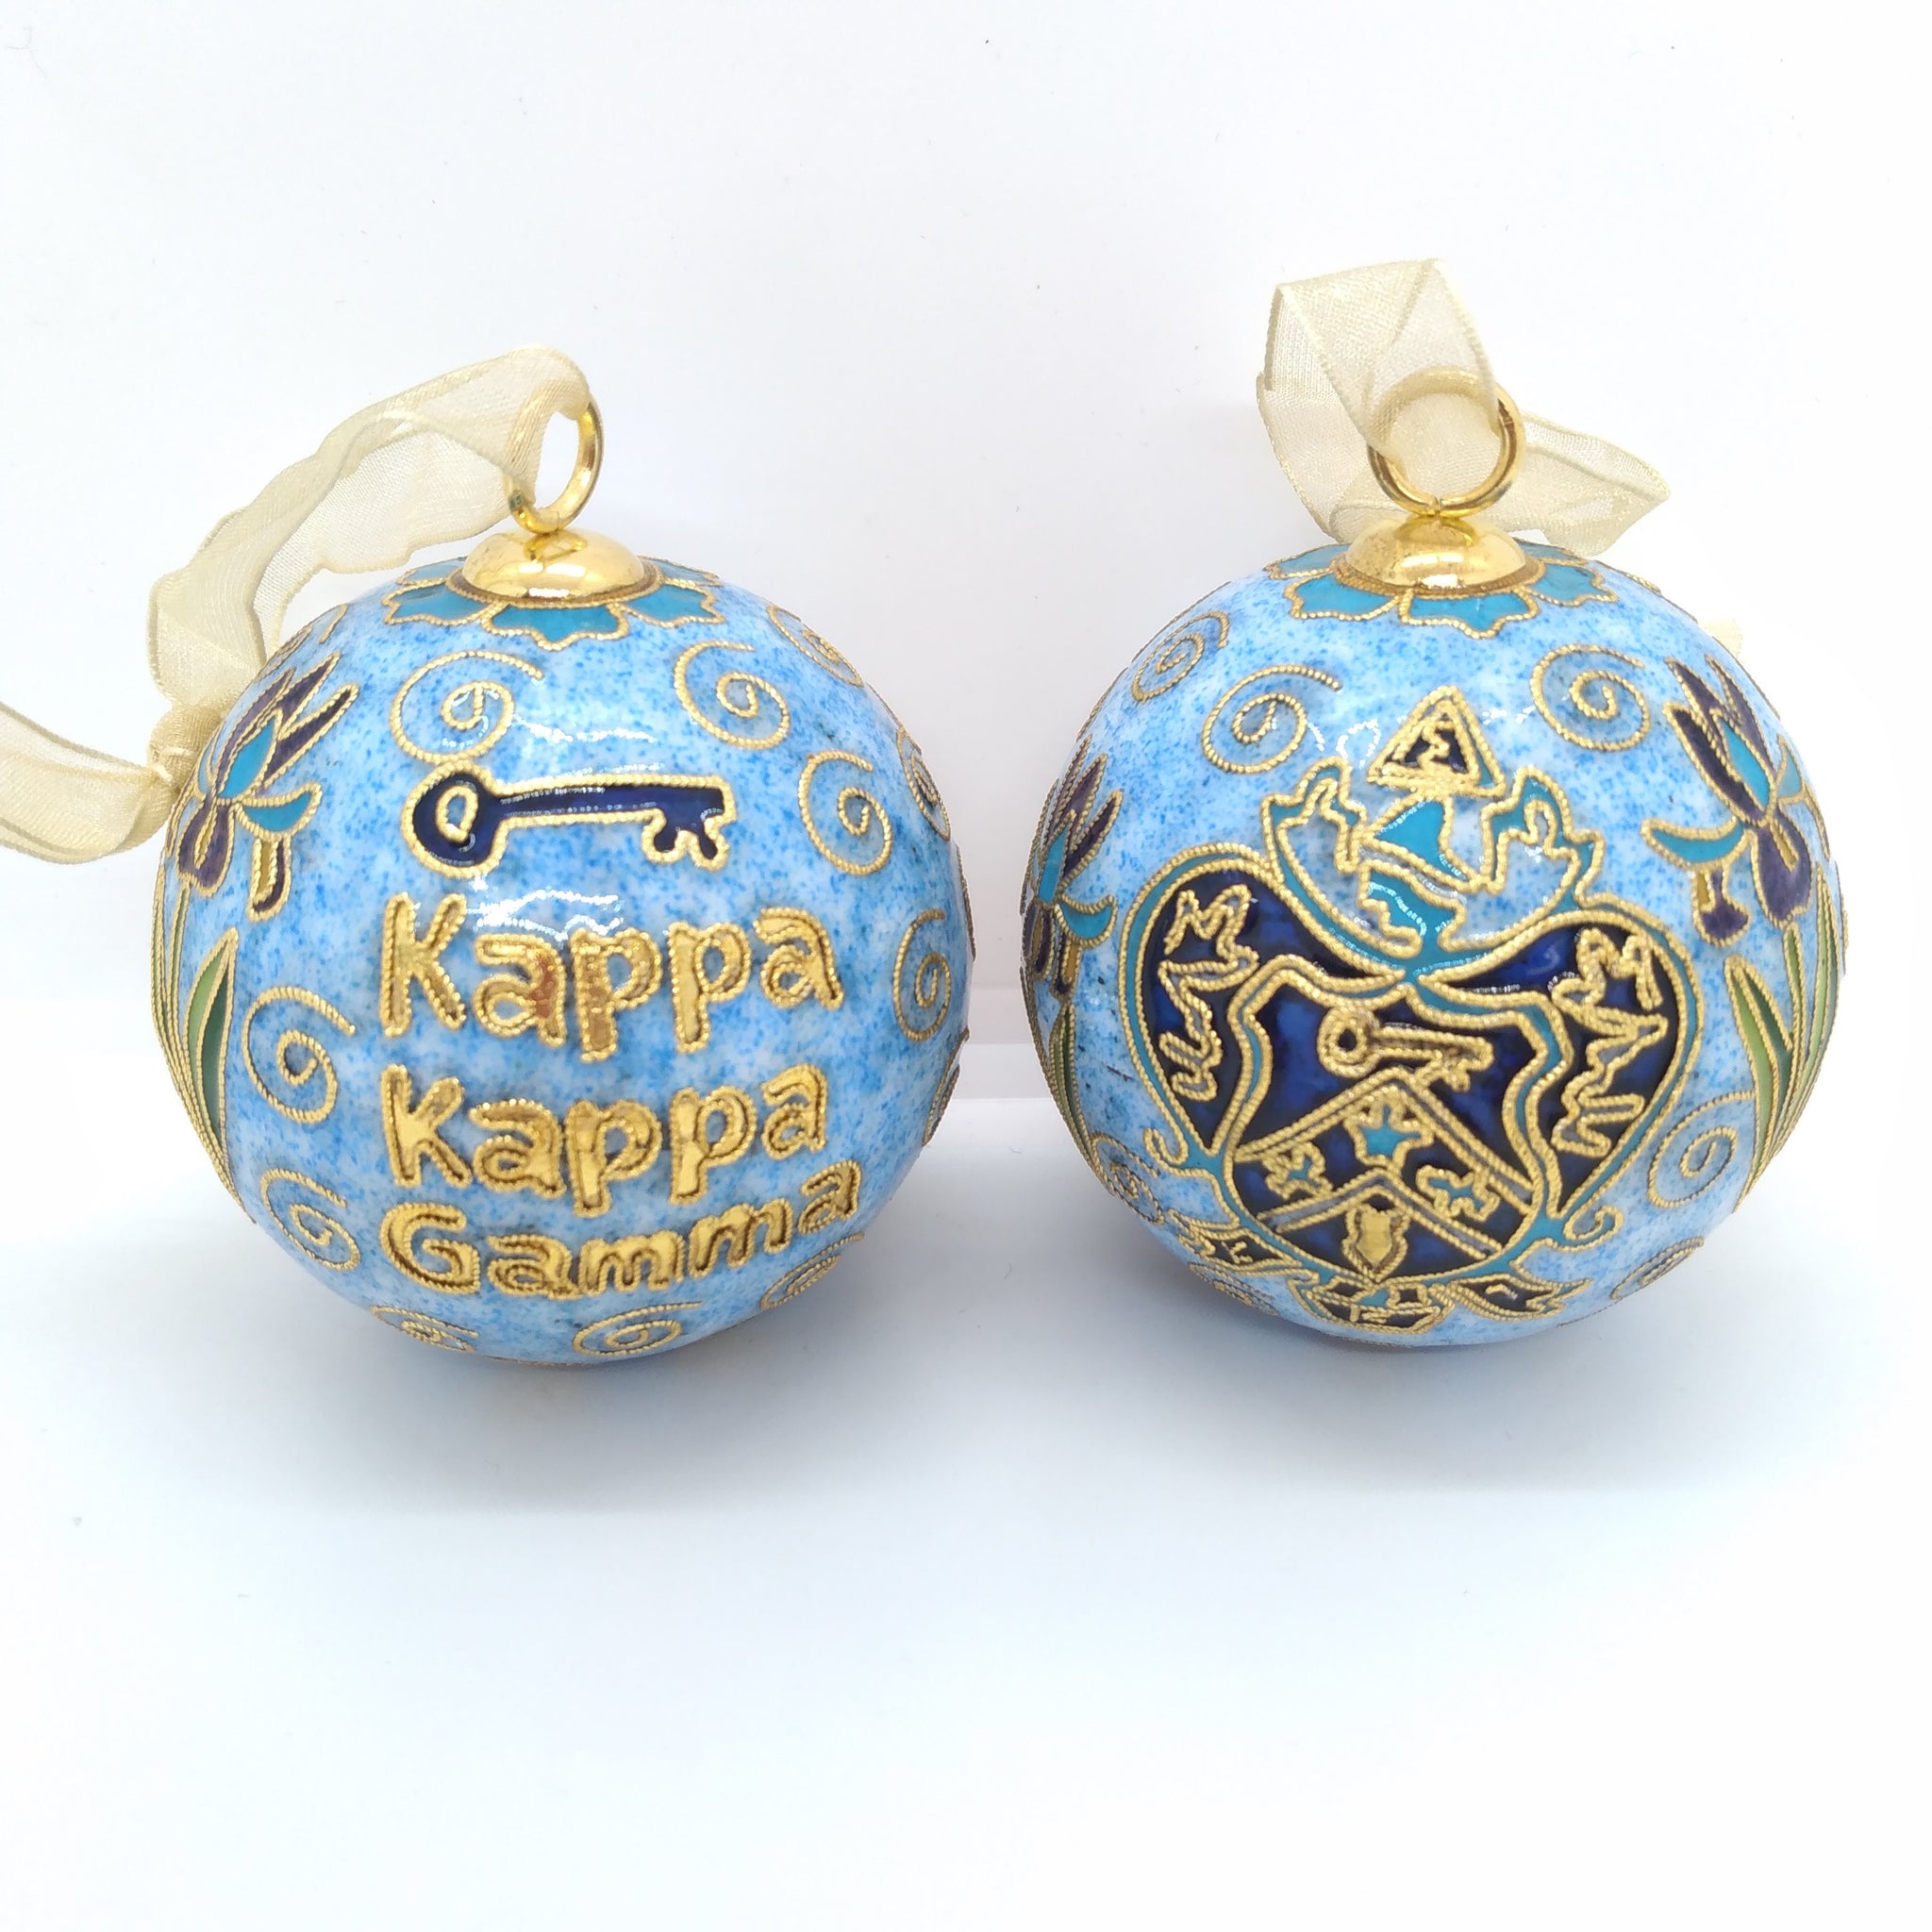 Exclusive Cloissone Ornament- Kappa Kappa Gamma